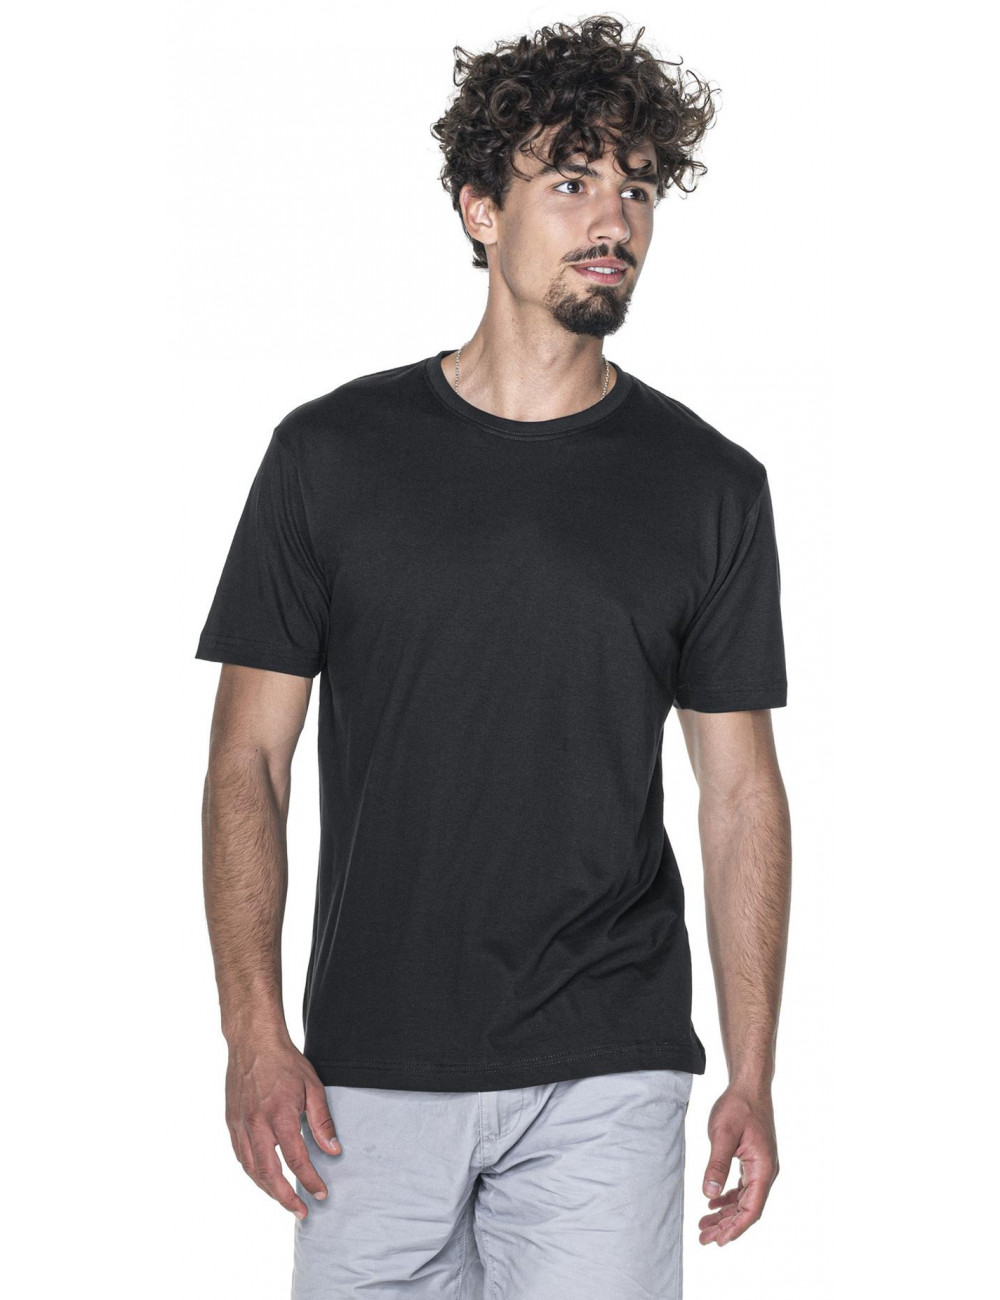 Schweres Herren-T-Shirt 170, schwarz, ohne Promostars-Tag